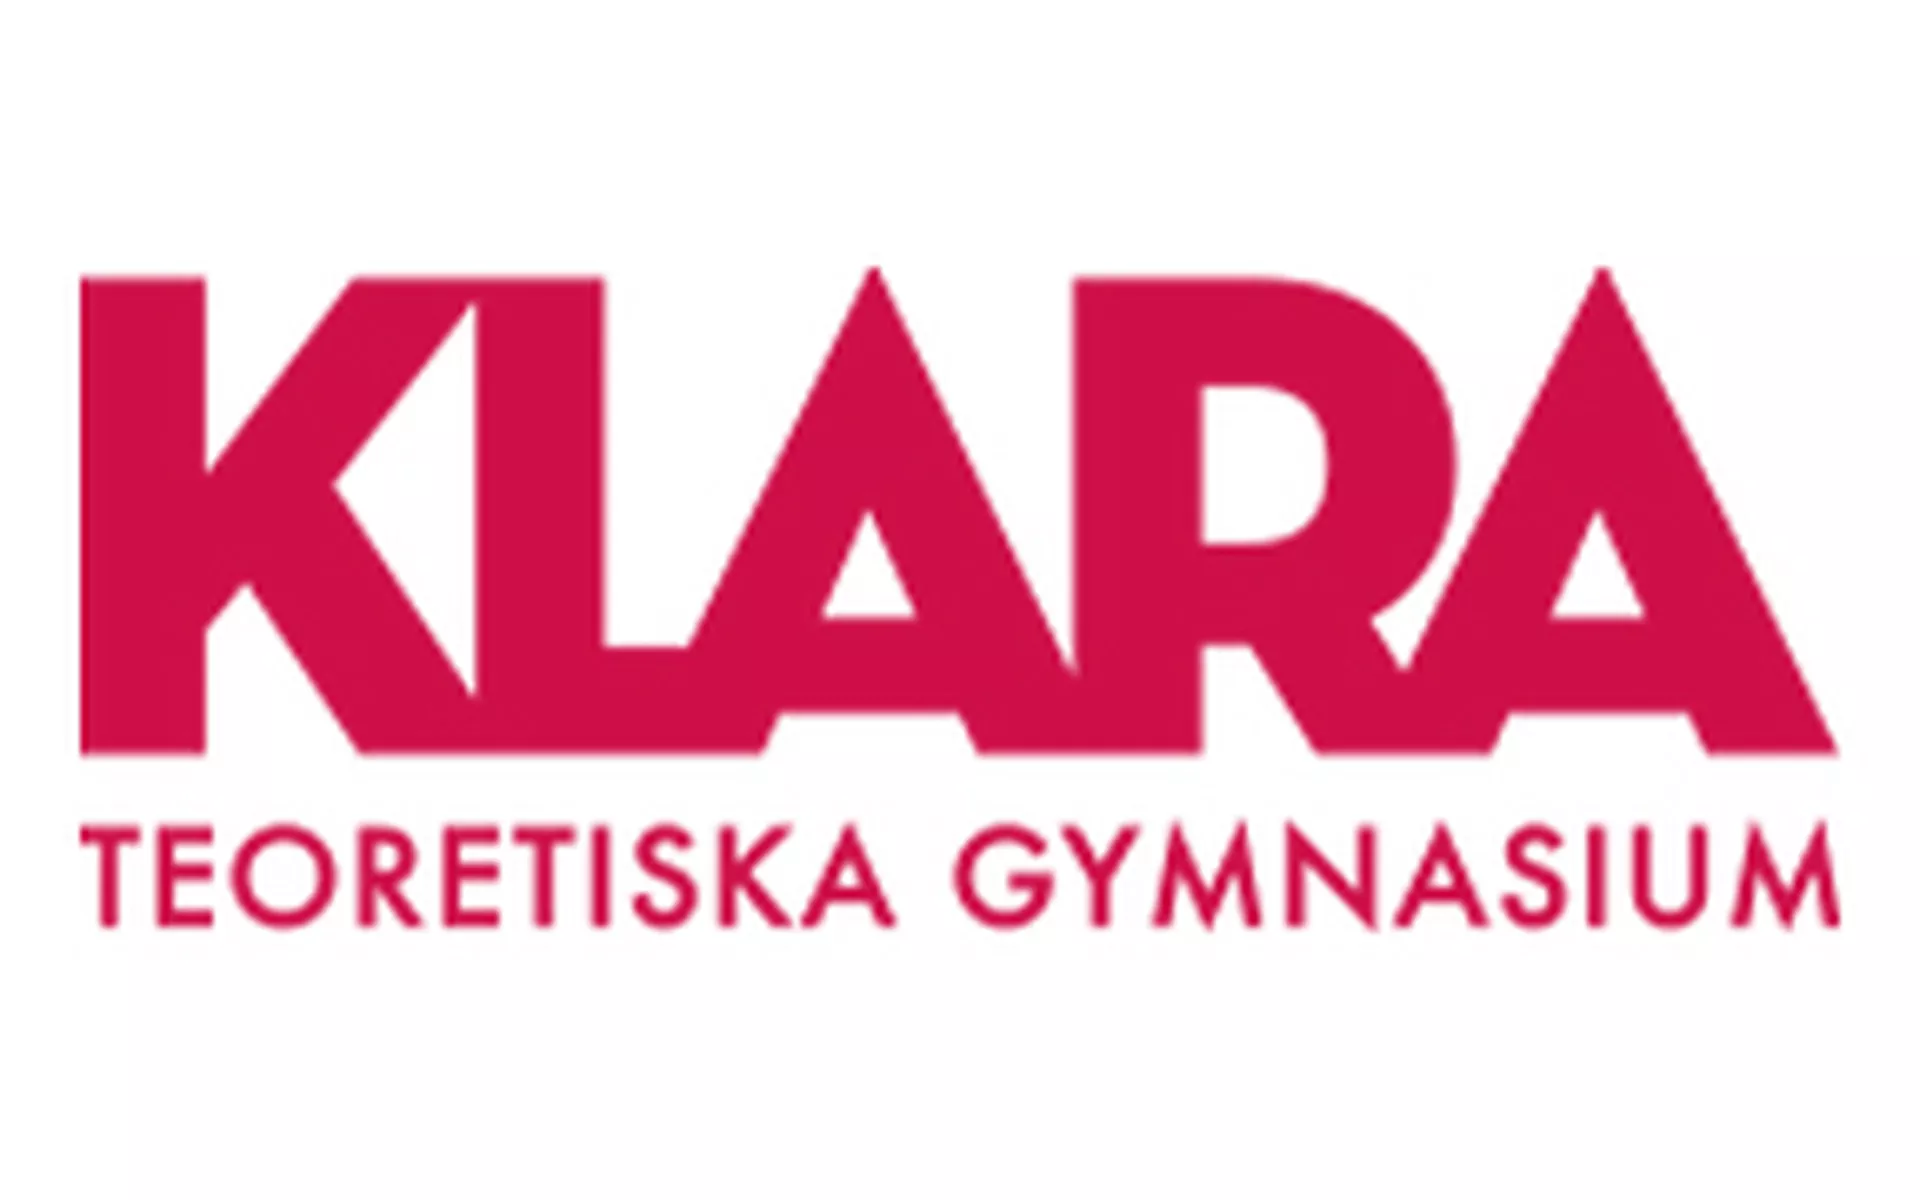 Klara Teoretiska Gymnasium Stockholm Västra